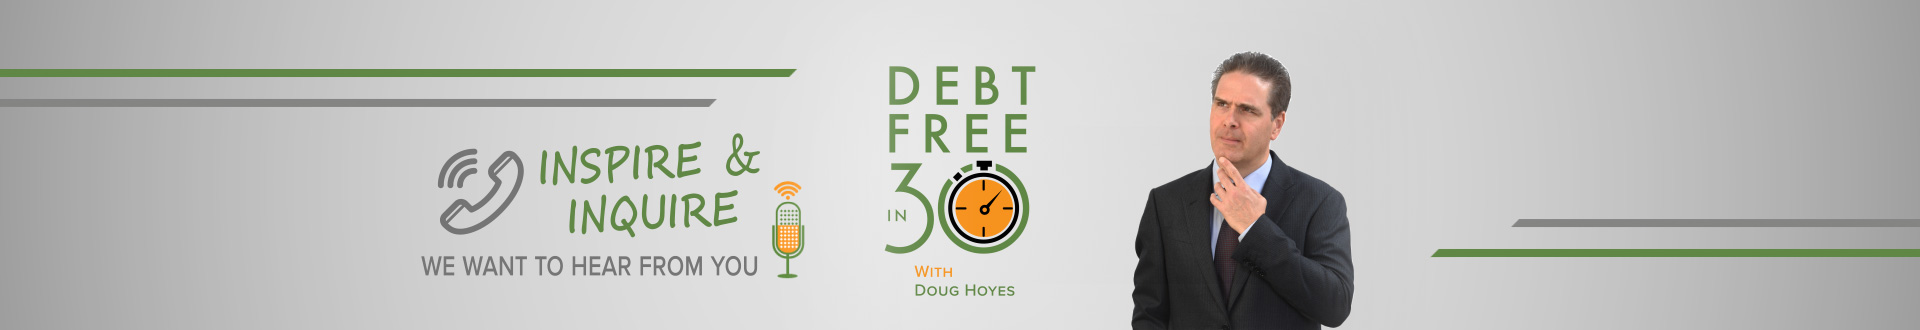 Debt Free in 30 Inspire & Inquire